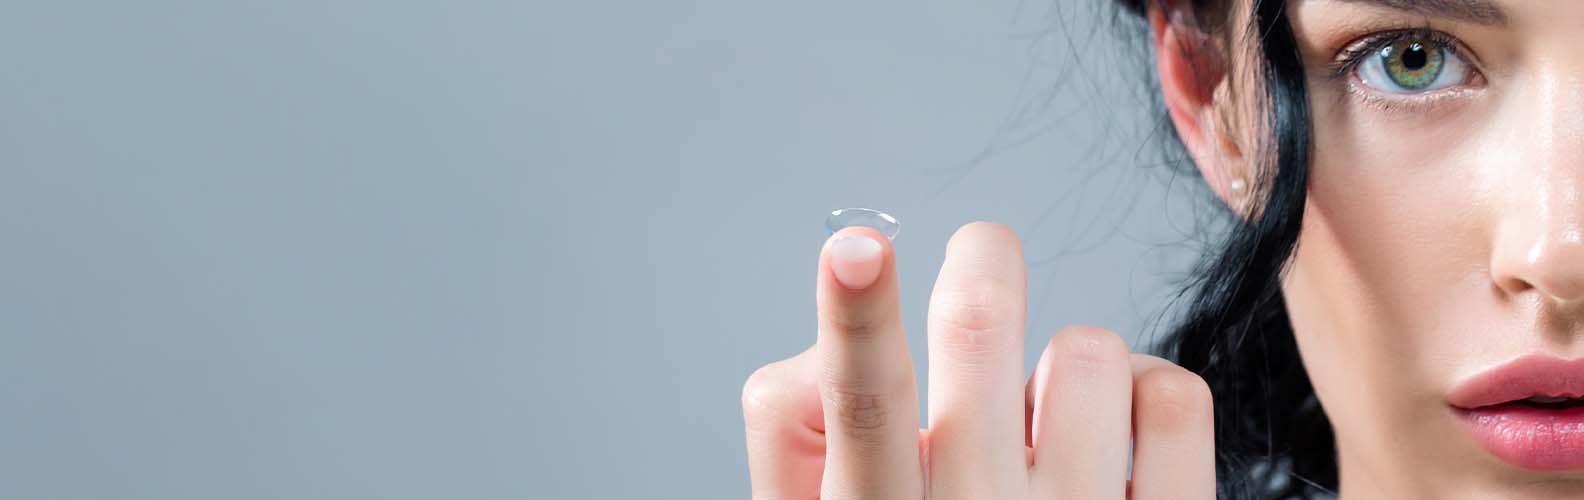 Nejlepší kontaktní čočky pro korekci astigmatismu